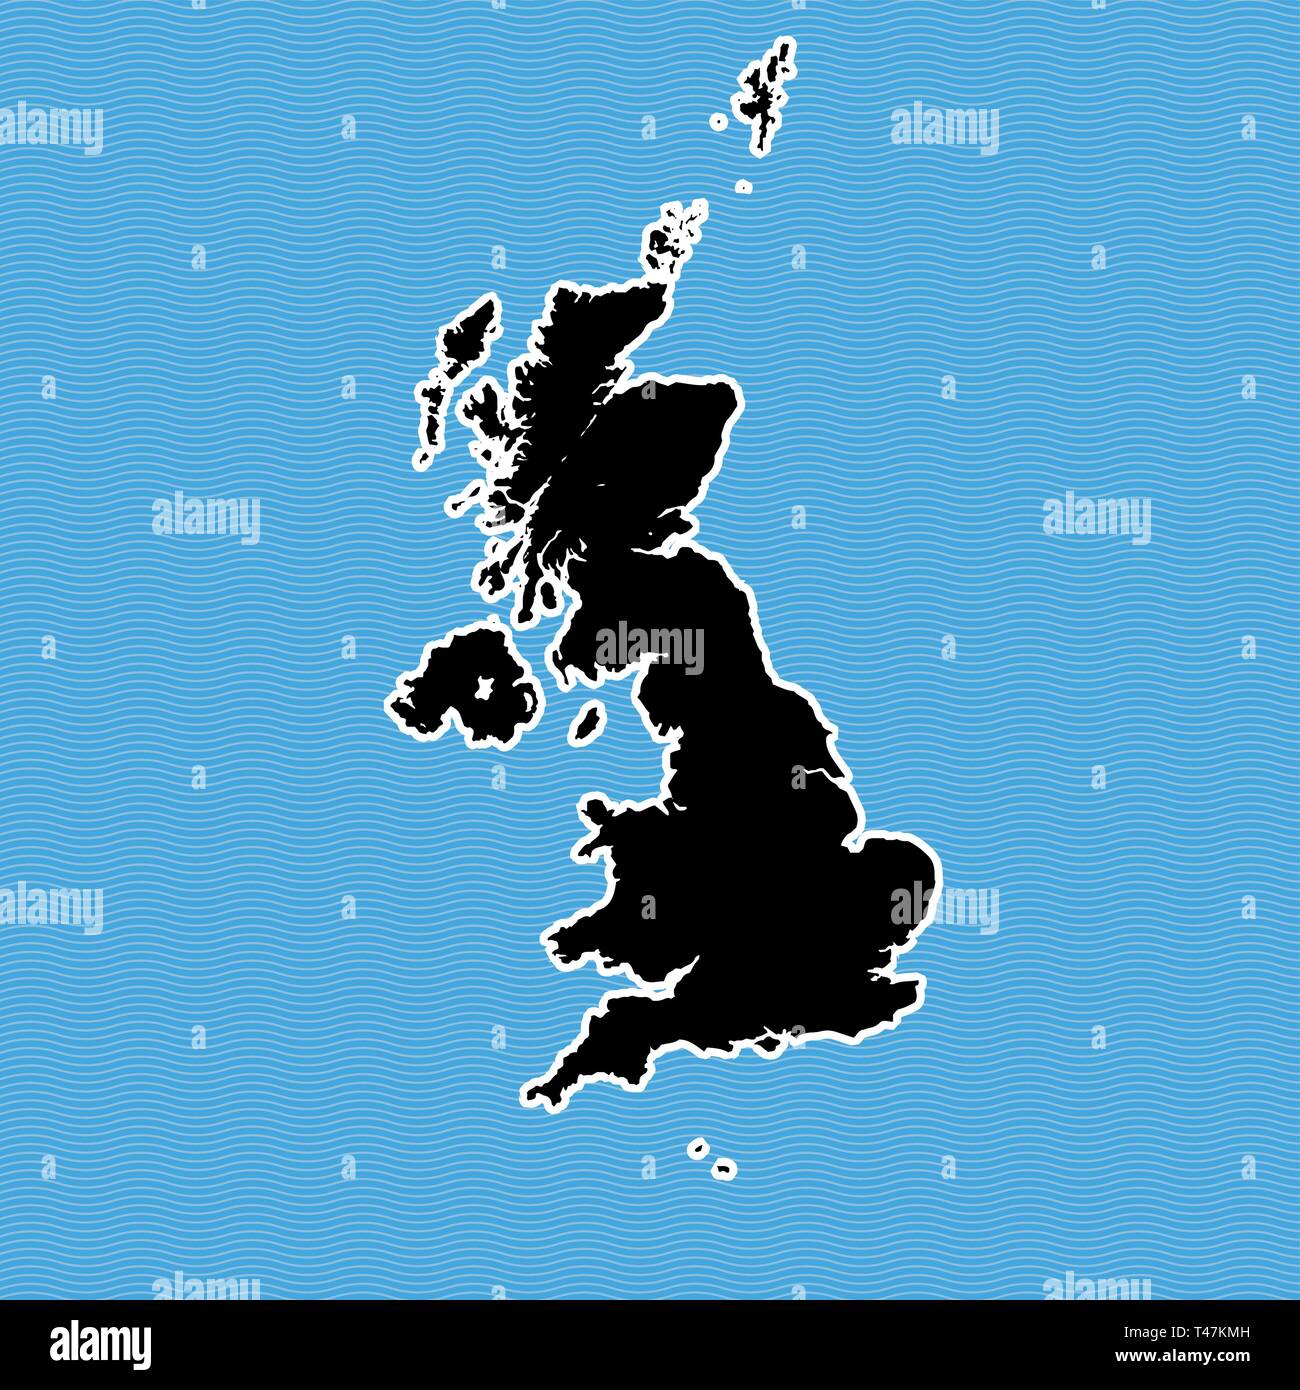 Großbritannien Karte als Insel. Karte auf Blue Wave Wasser Hintergrund getrennt. Stock Vektor